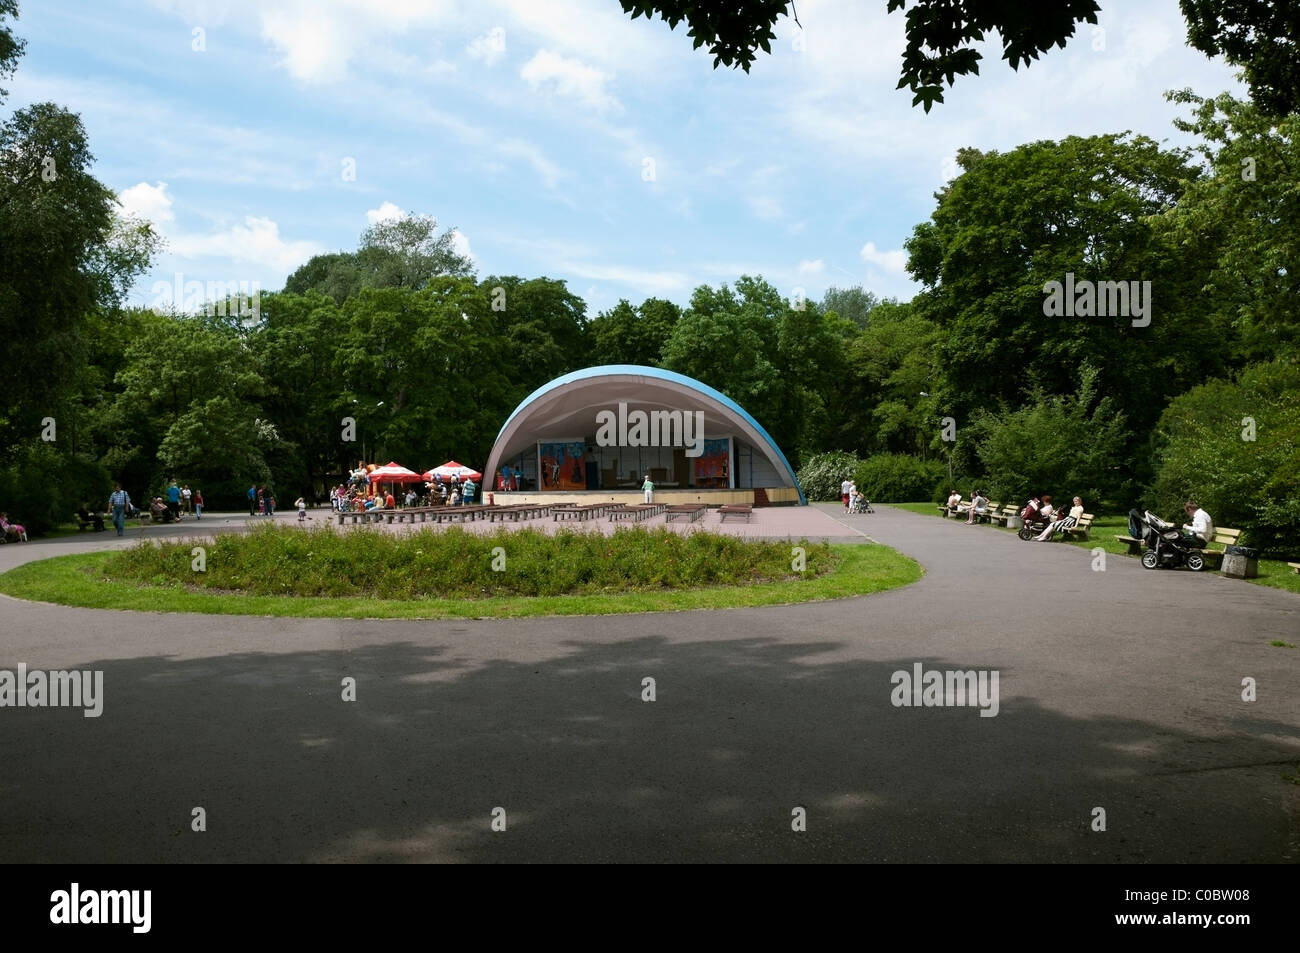 Vue paysage de Hetman ou parc de Prague avec shell bande à Varsovie, Prague, l'été du district du nord de la Pologne, de l'Europe, l'UNION EUROPÉENNE Banque D'Images